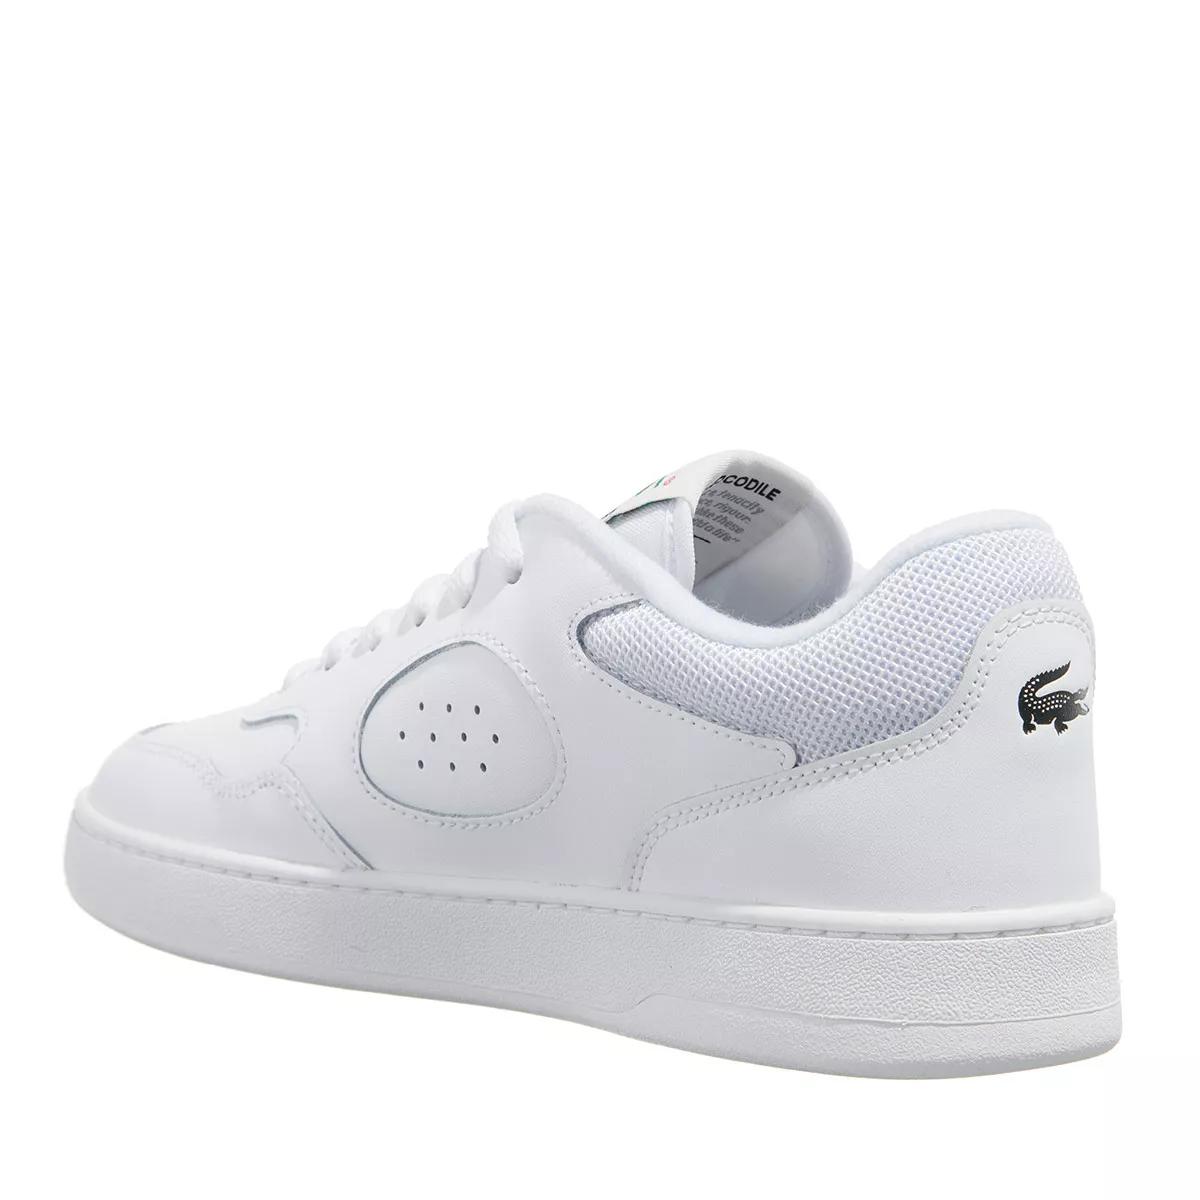 Lacoste Lineset 223 1 Sfa Wht/Wht | Low-Top Sneaker